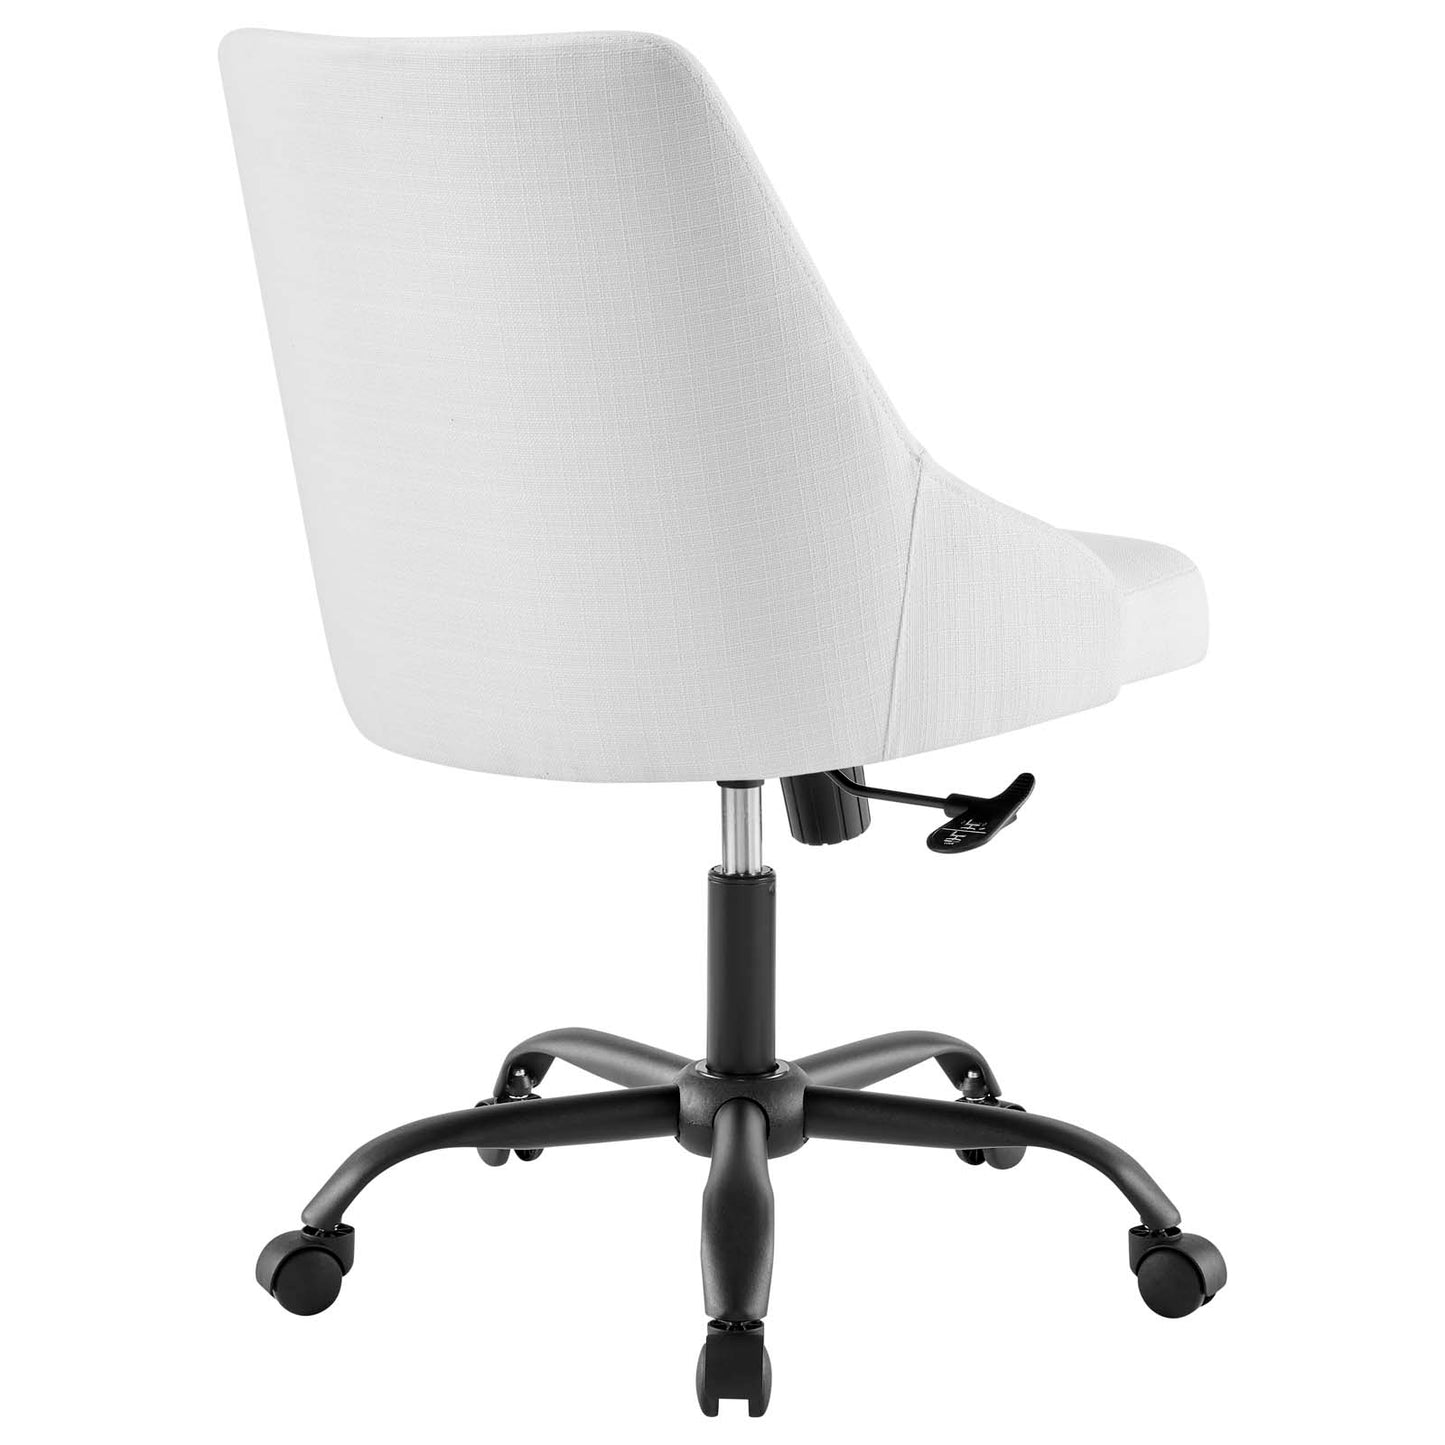 Designate Swivel Upholstered Office Chair Black White EEI-4371-BLK-WHI